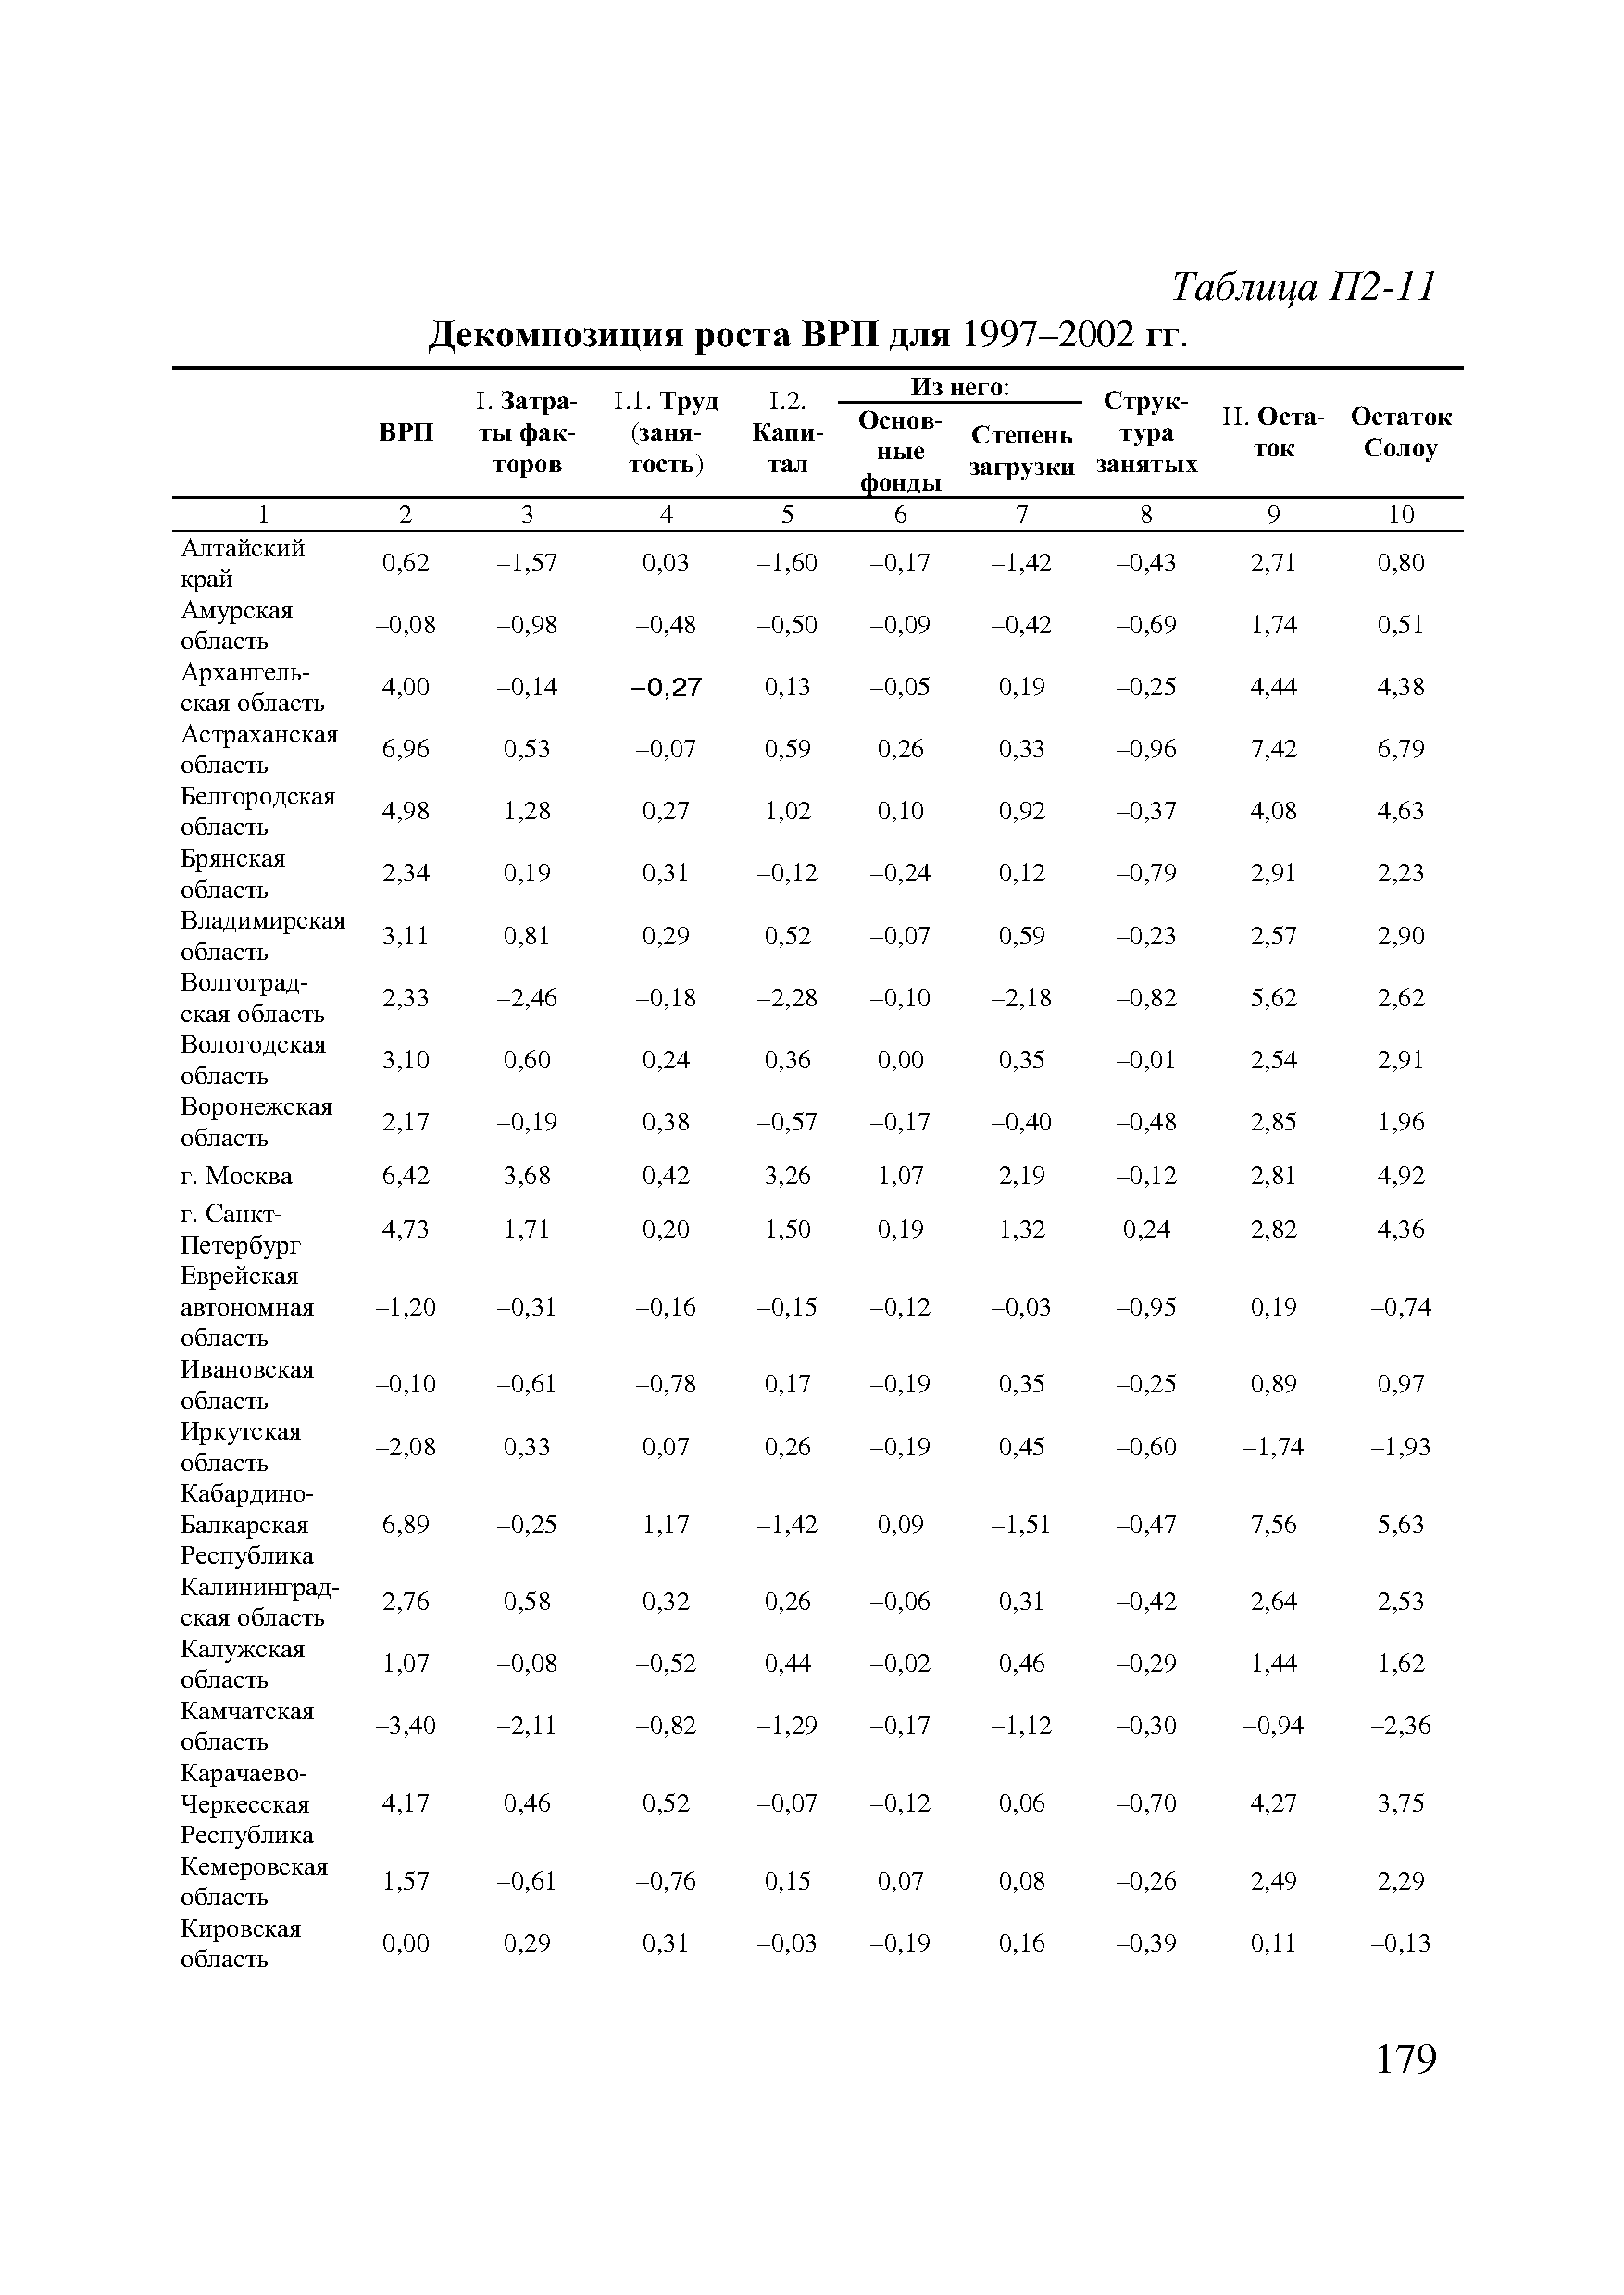 Таблица П2-11 Декомпозиция роста ВРП для 1997-2002 гг.
